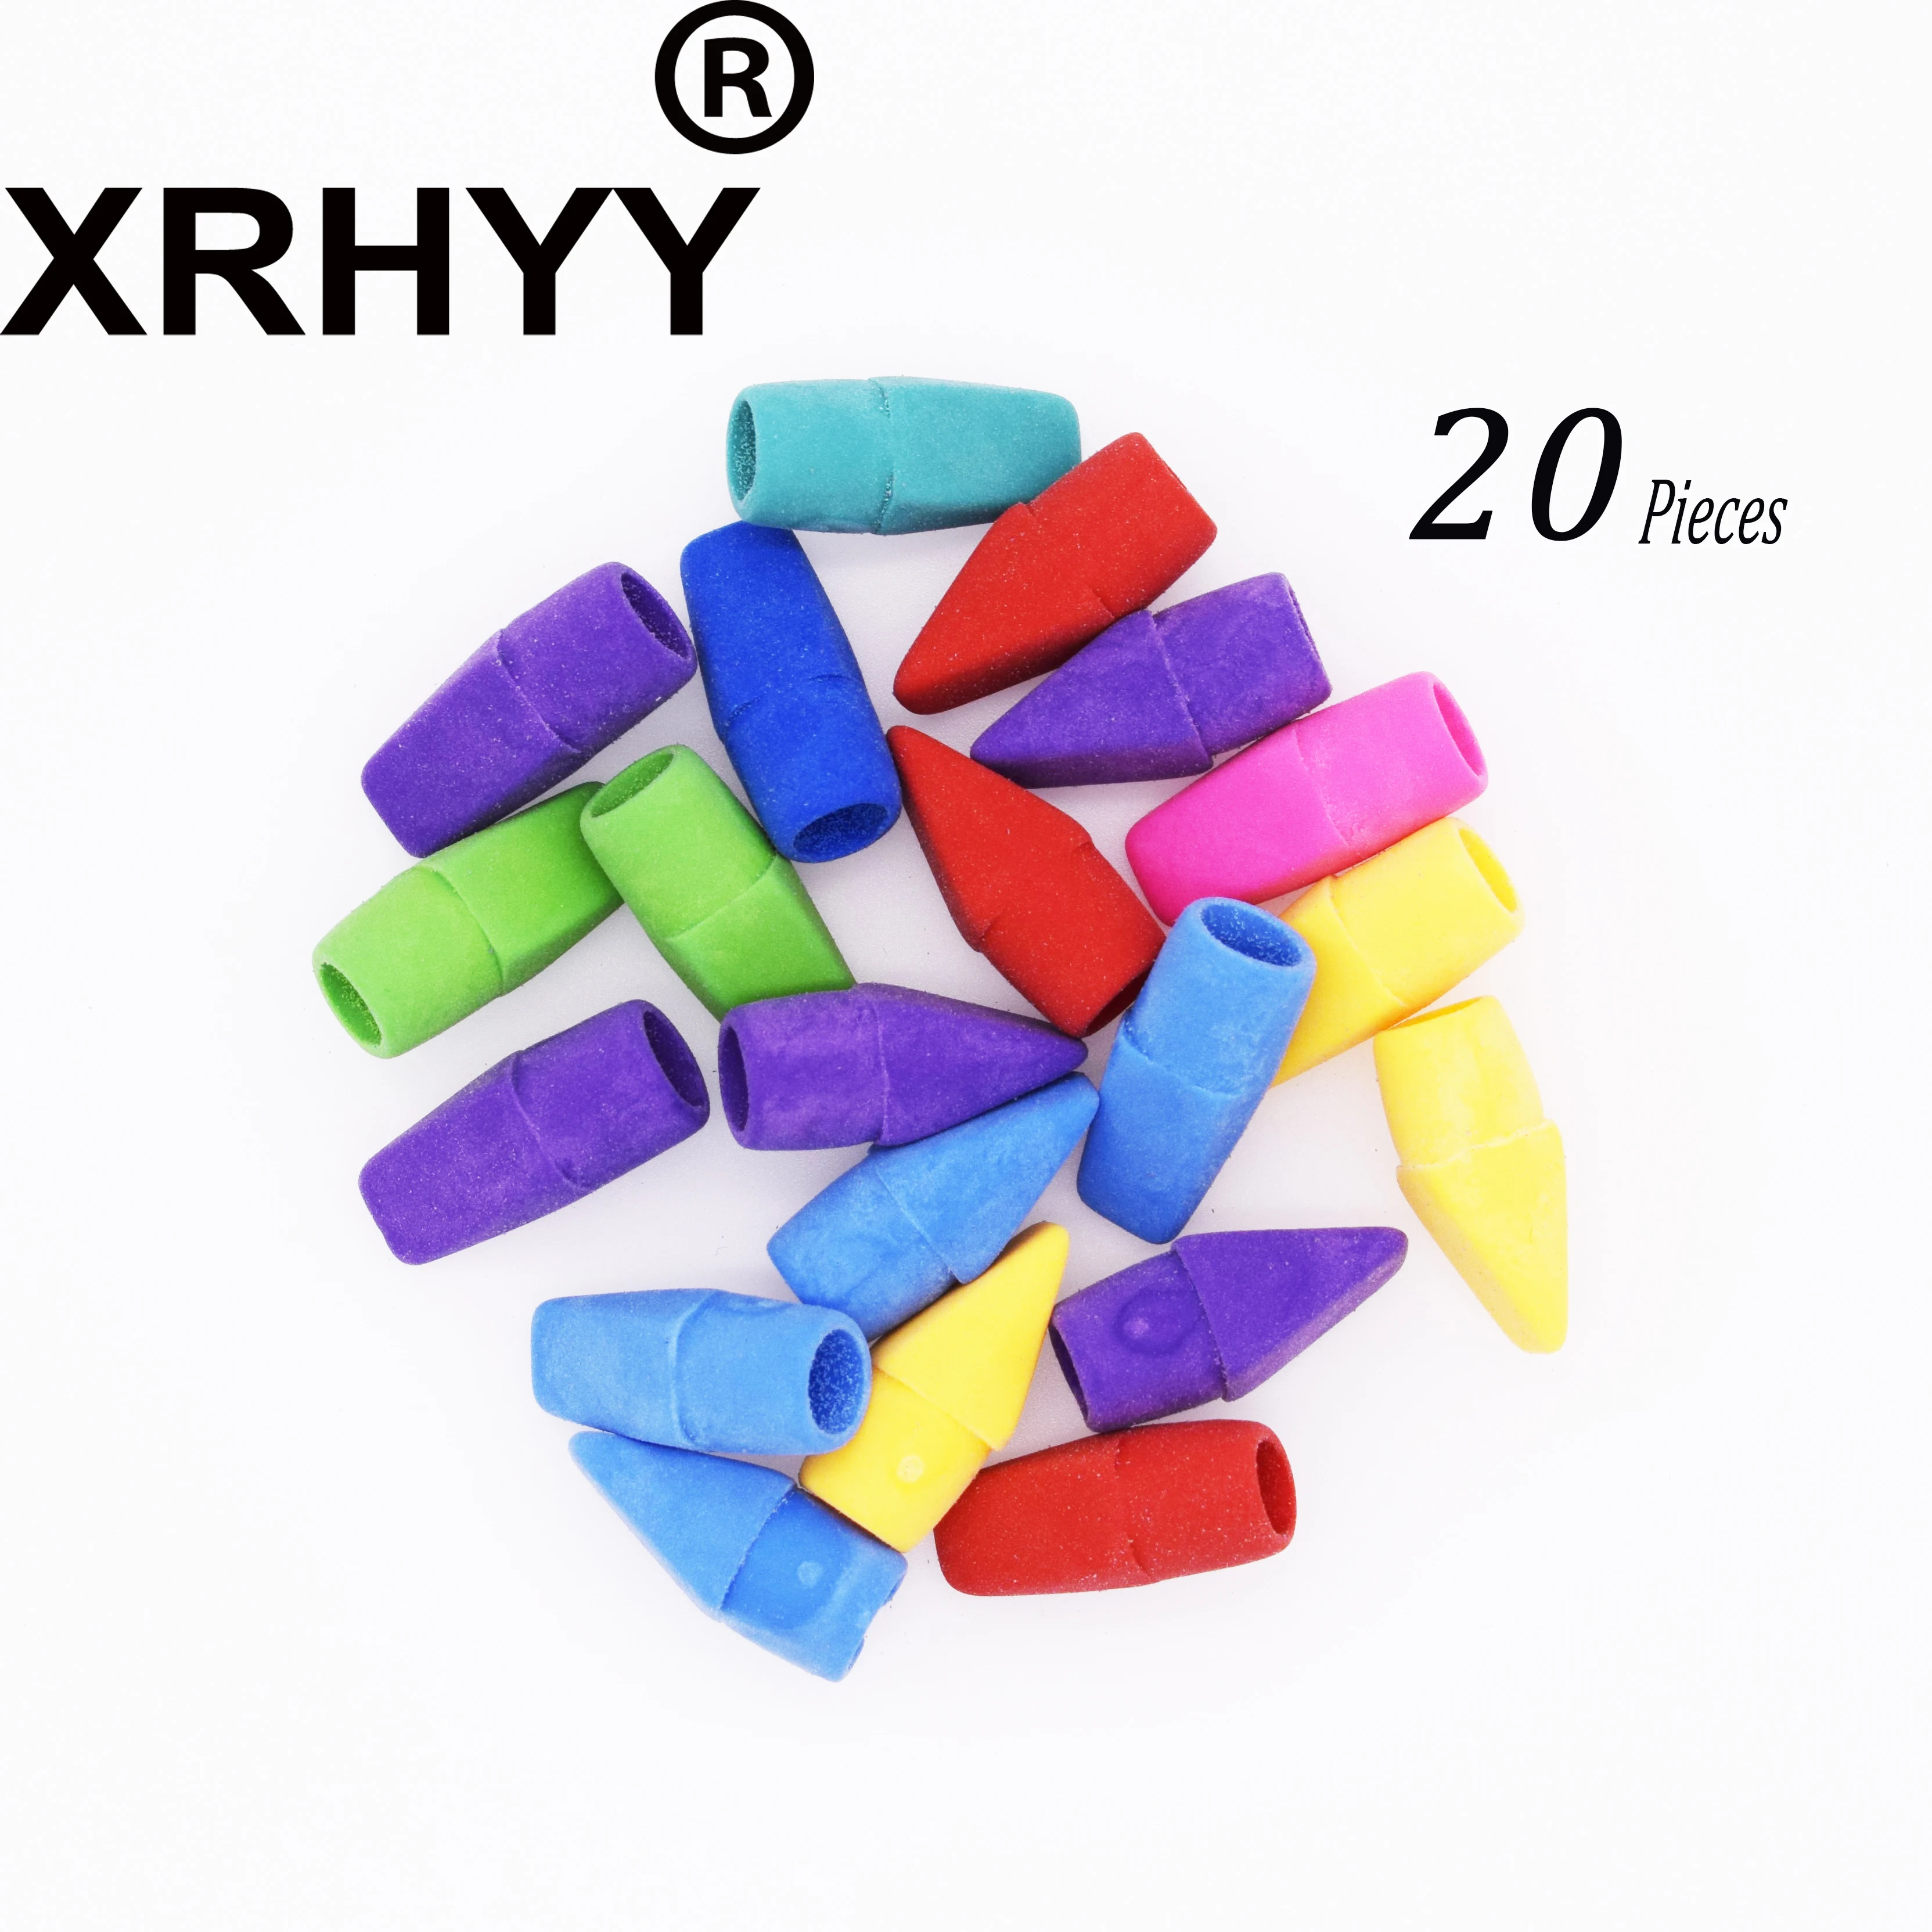 XRHYY 1 Упаковка из 20 штук Карандаш Топ ластик крышки зубило форма карандаш ластик топперы ассорти цветов оптом(случайный цвет